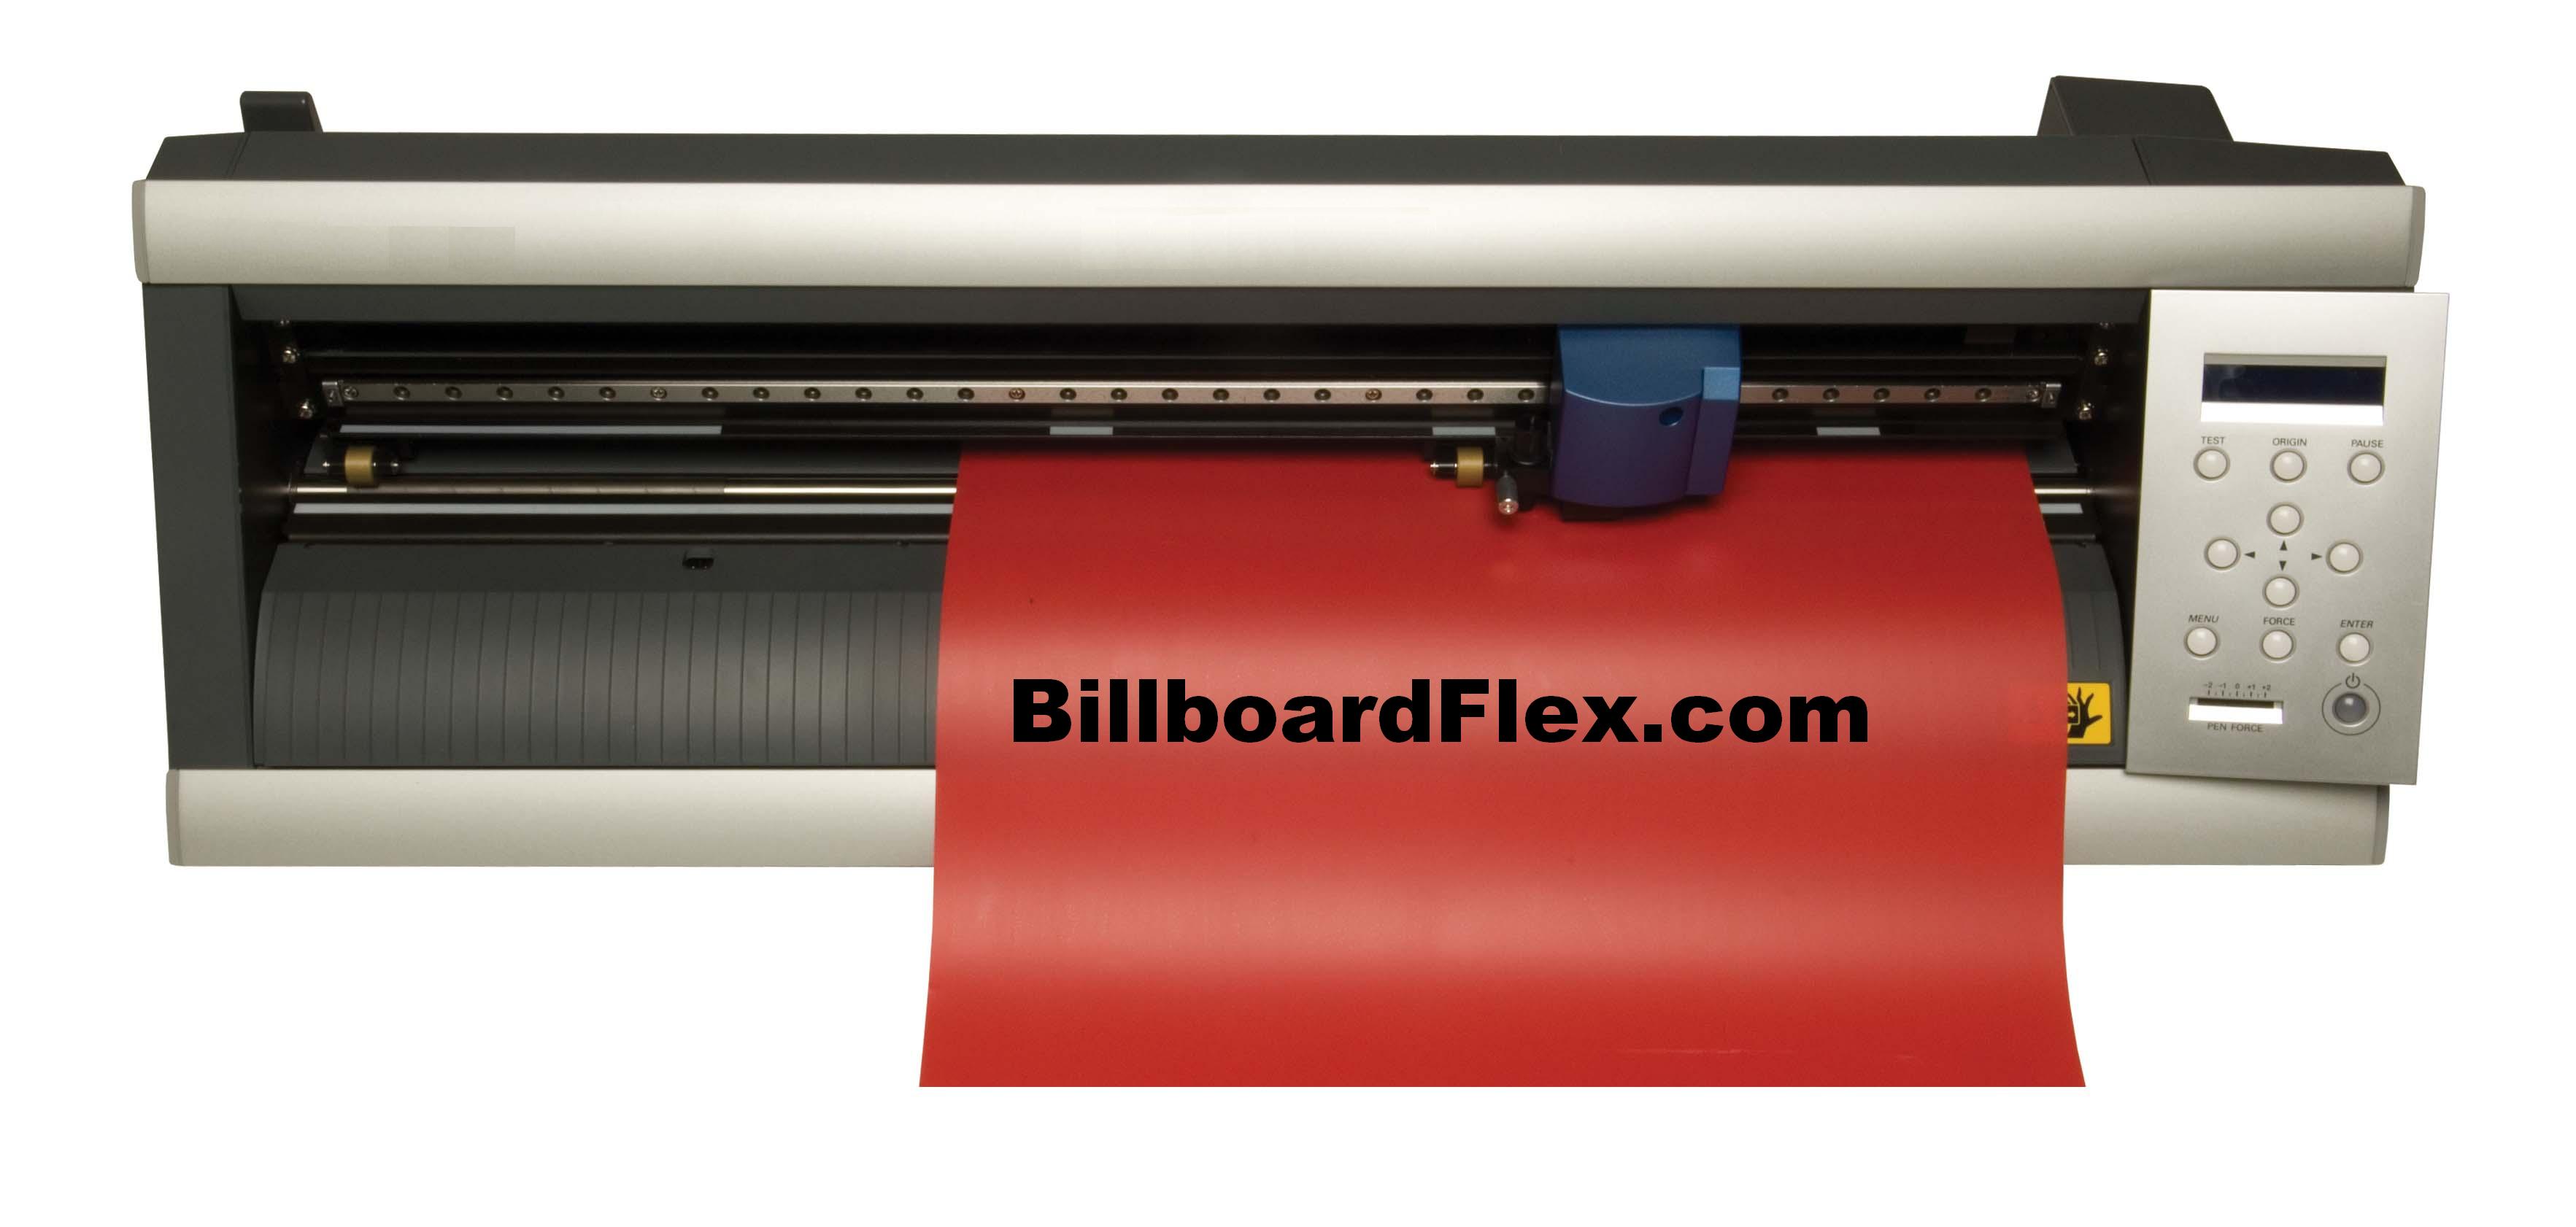 Big Vinyl Printer Large Format Printers